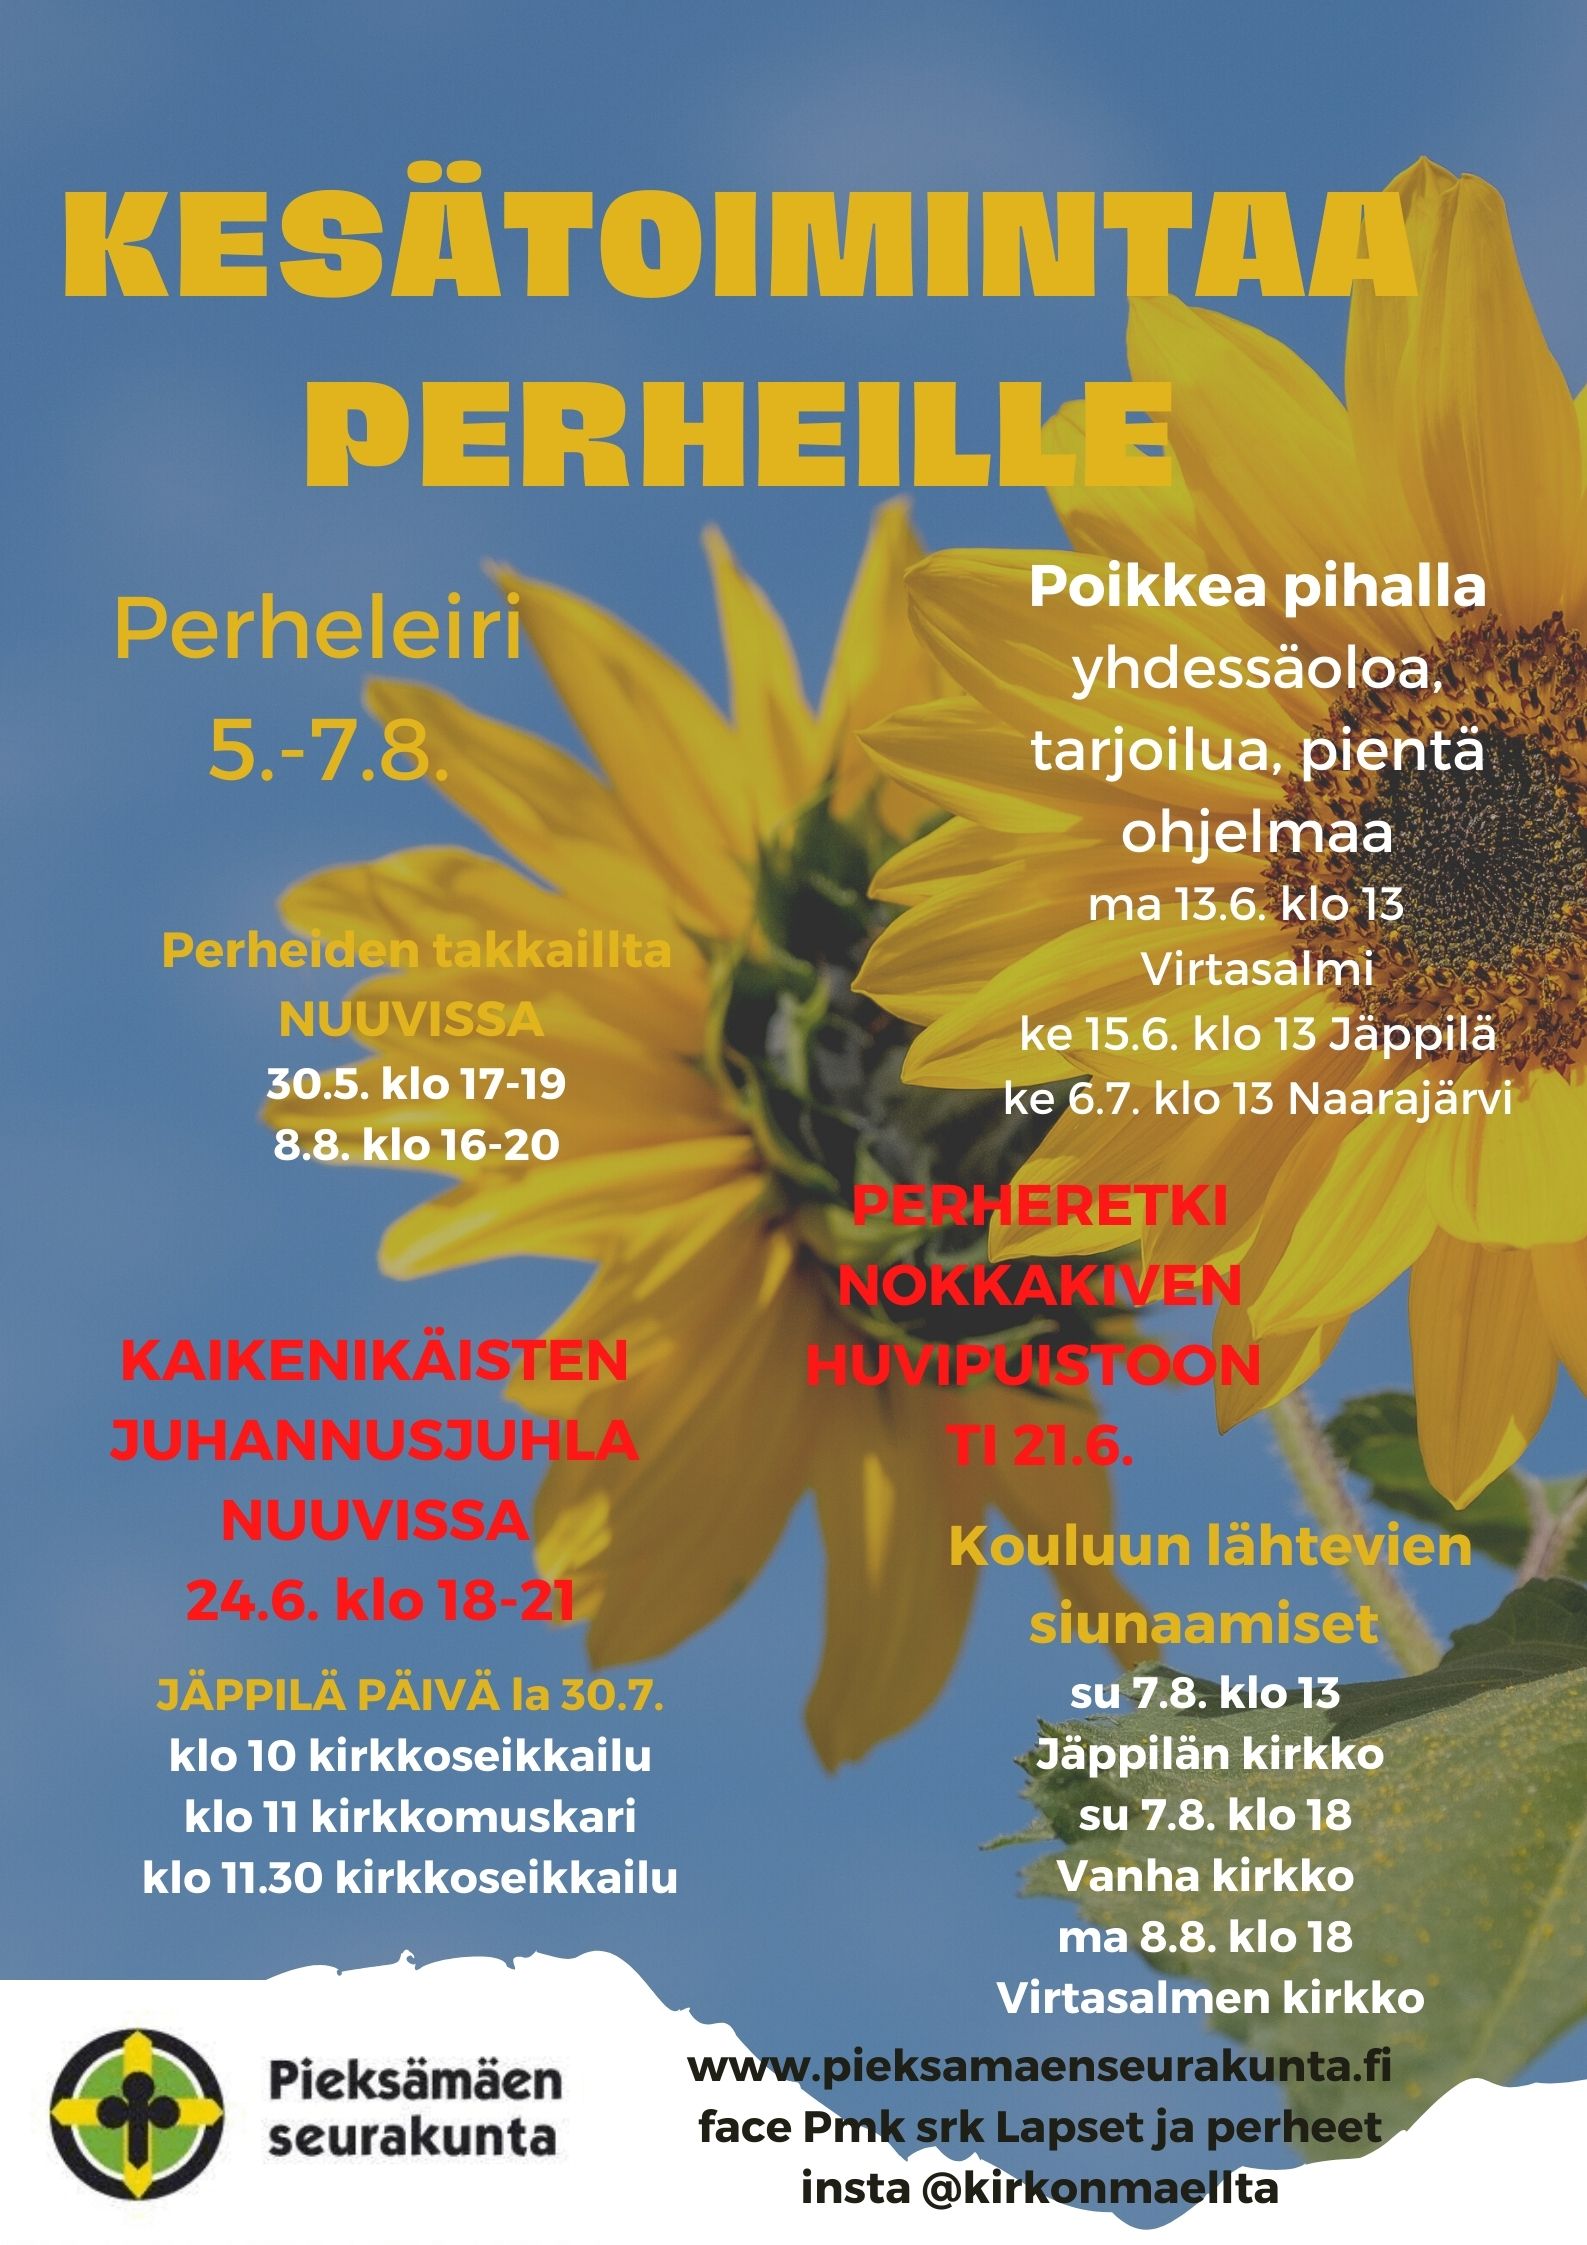 Kuvana auringonkunat ja sininen taivas, tekstinä kesätoimintaa perheille